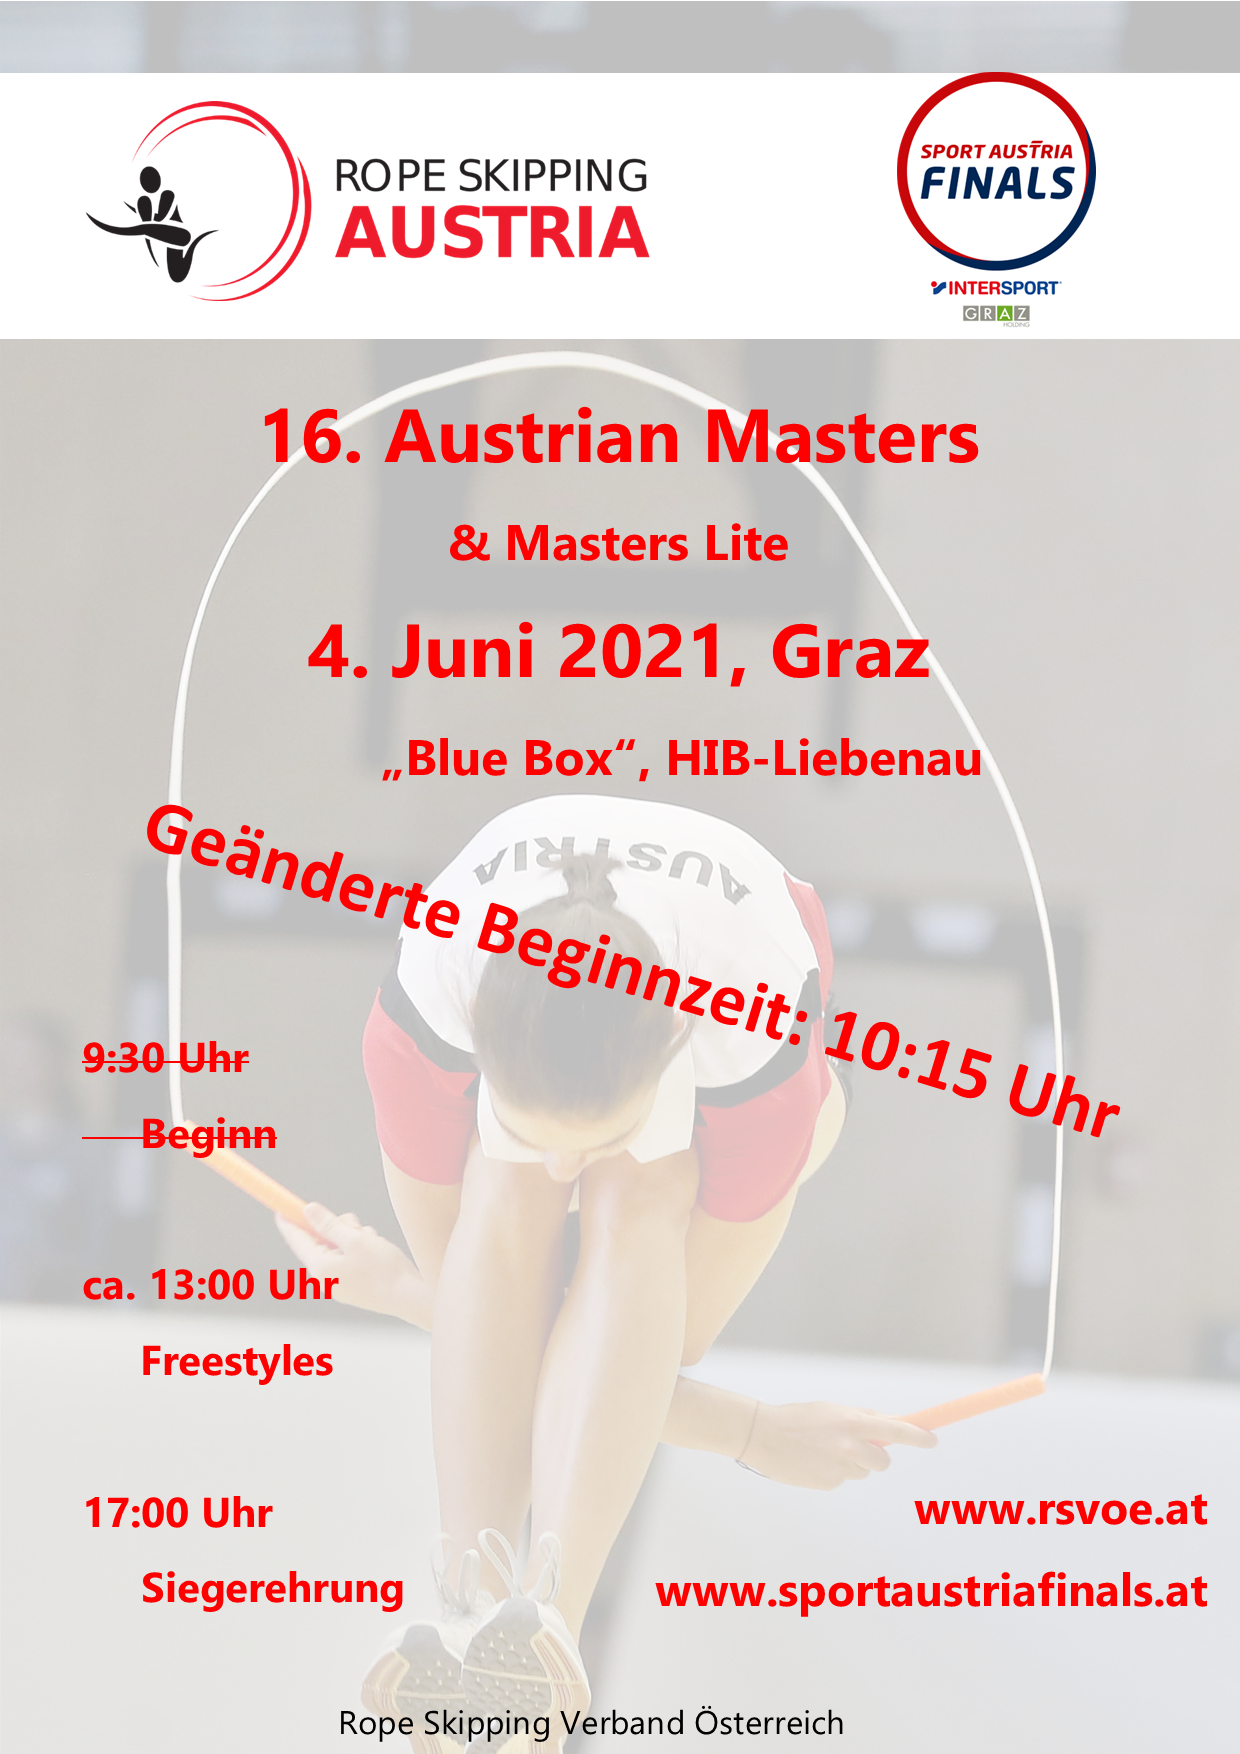 Rope Skipping Austrian Masters 2021 im Rahmen der Sport Austria Finals in Graz